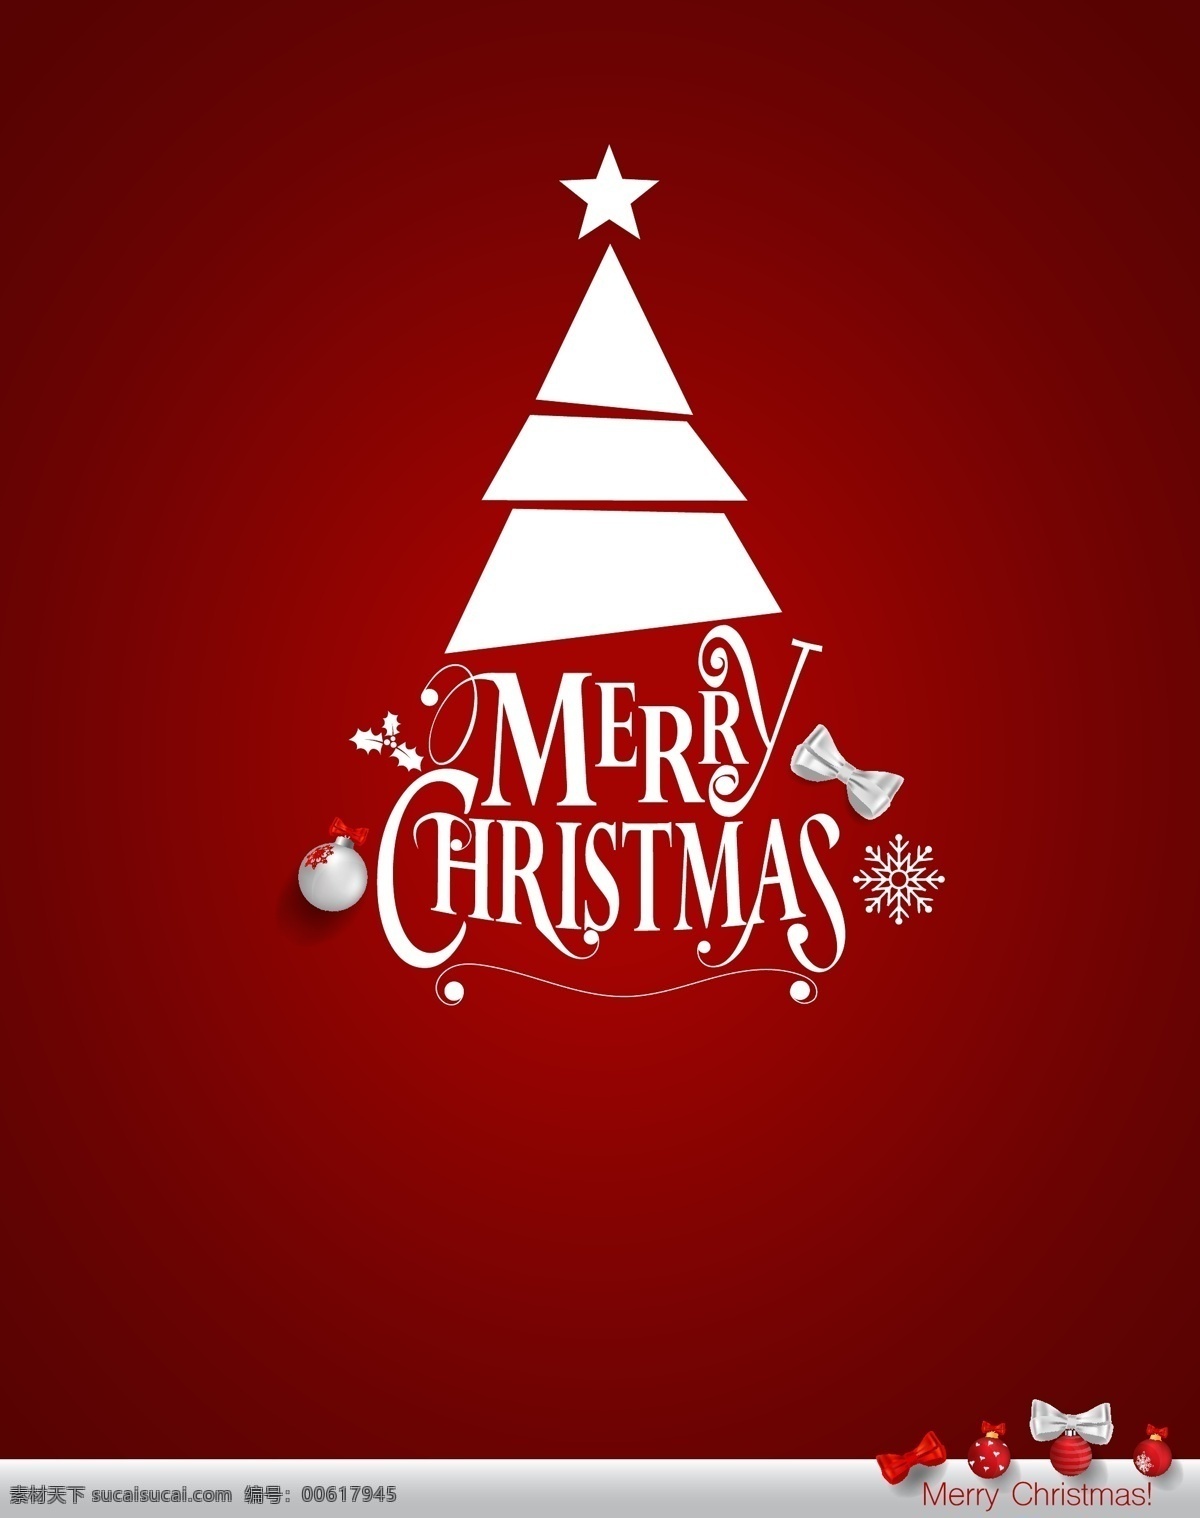 立体 装饰 圣诞节 字体 海报 矢量 背景 圣诞树 快乐 christmas 立体装饰 圣诞装饰 红色背景 节日 宣传 庆祝 背景素材